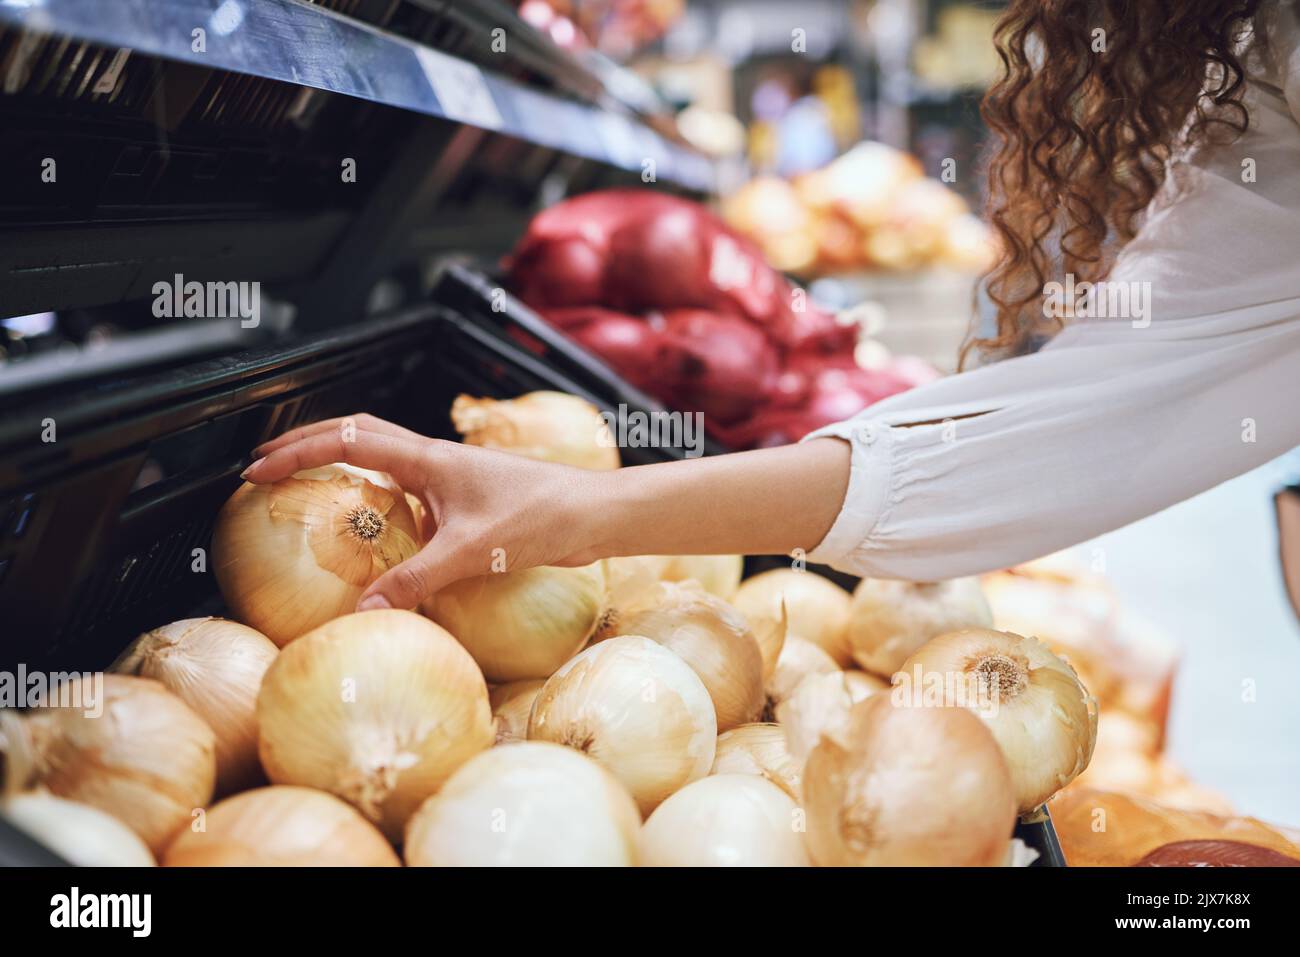 Gemüse, Lebensmitteleinkäufe und Gesundheit, während ein Kunde frische Zwiebeln im Supermarkt oder im Lebensmittelgeschäft wählt. Nahaufnahme der Hände einer Frau, die vegan kauft Stockfoto